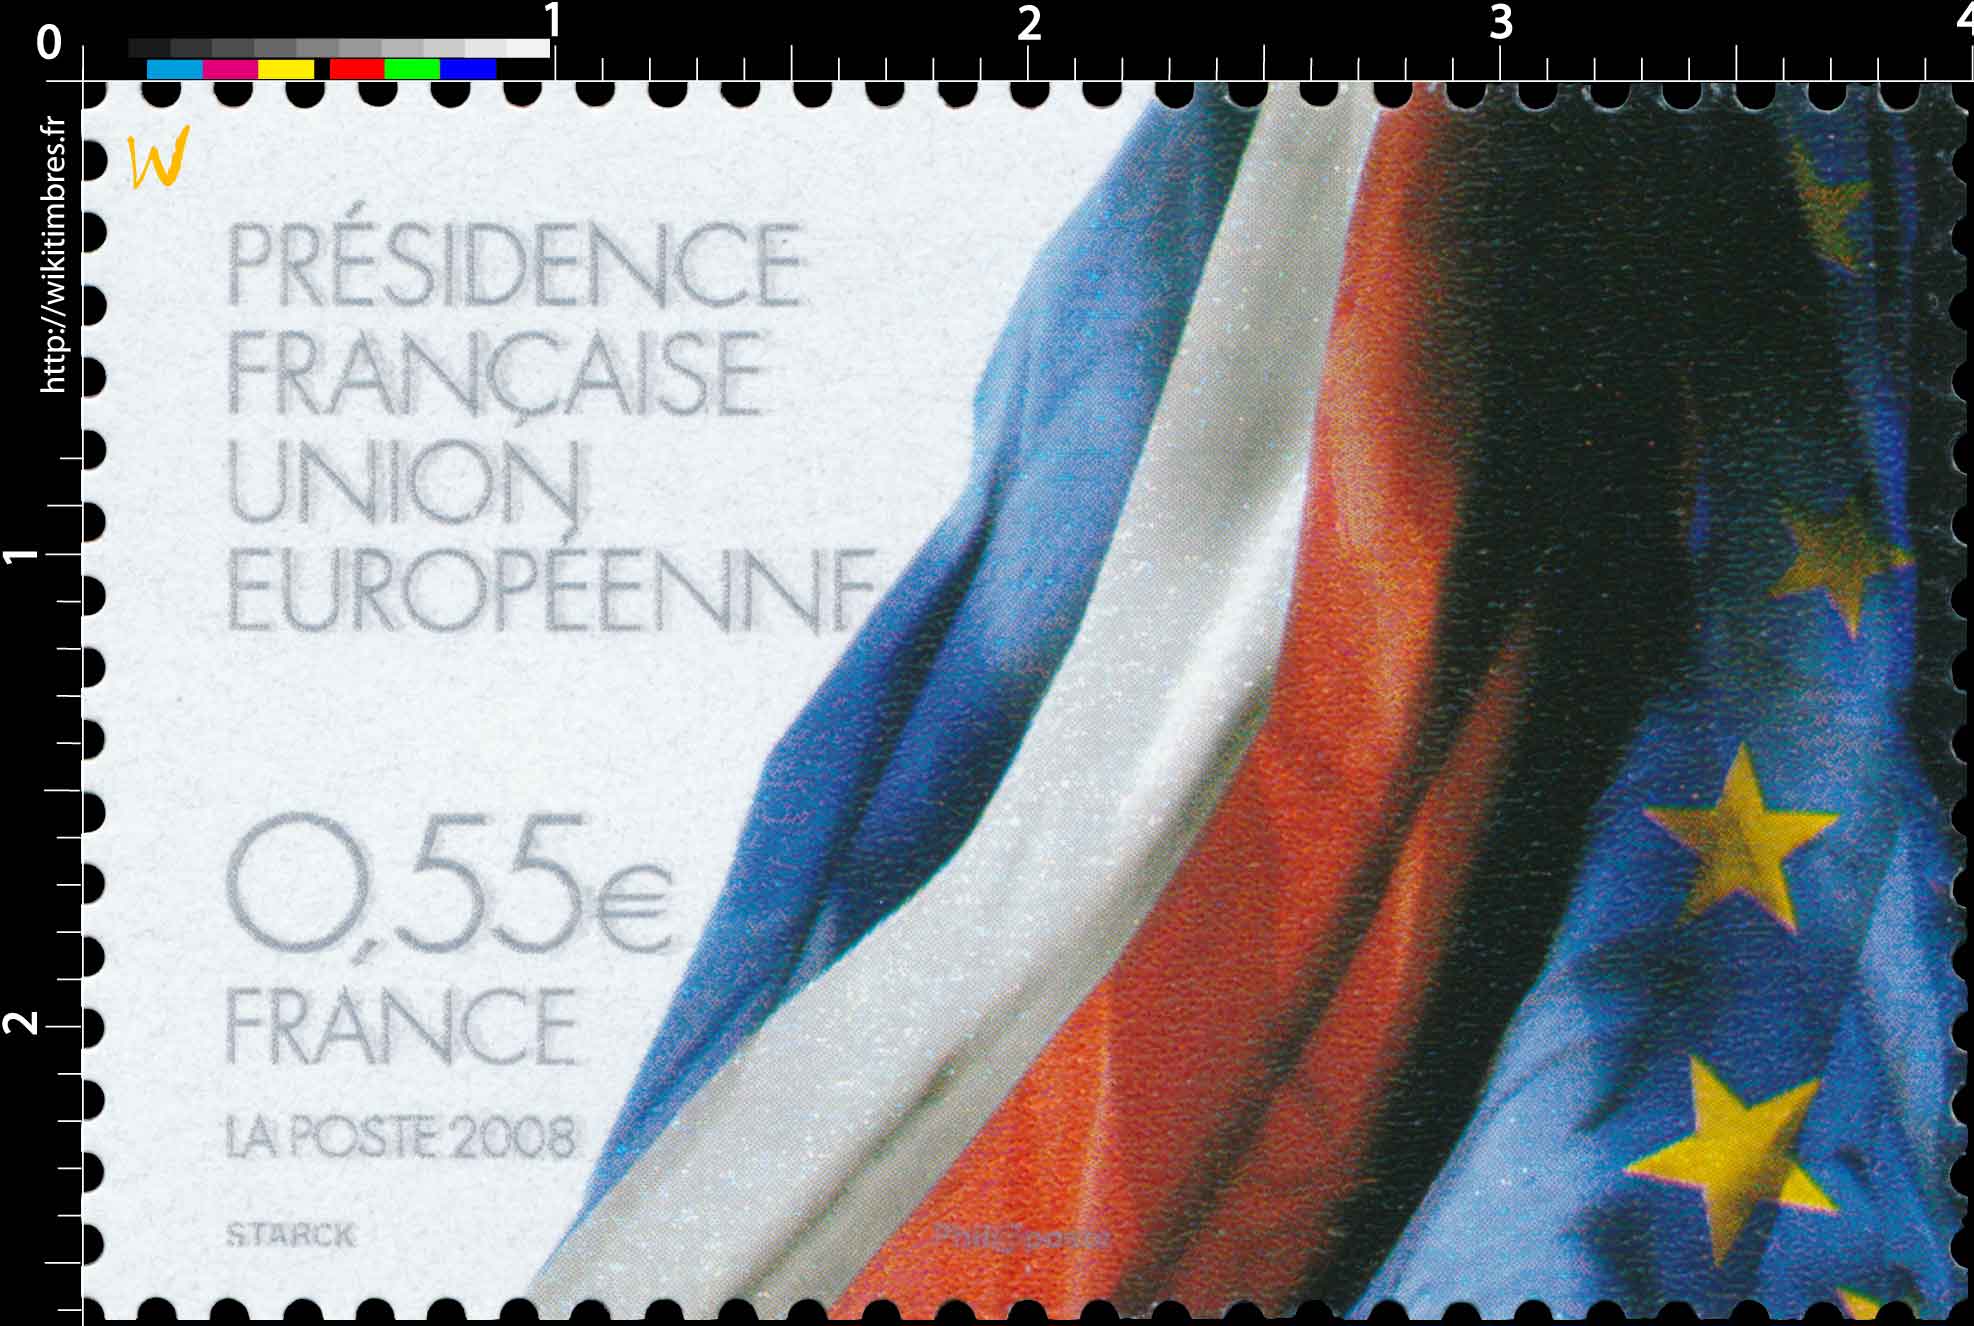 2008 PRÉSIDENCE FRANÇAISE UNION EUROPÉENNE